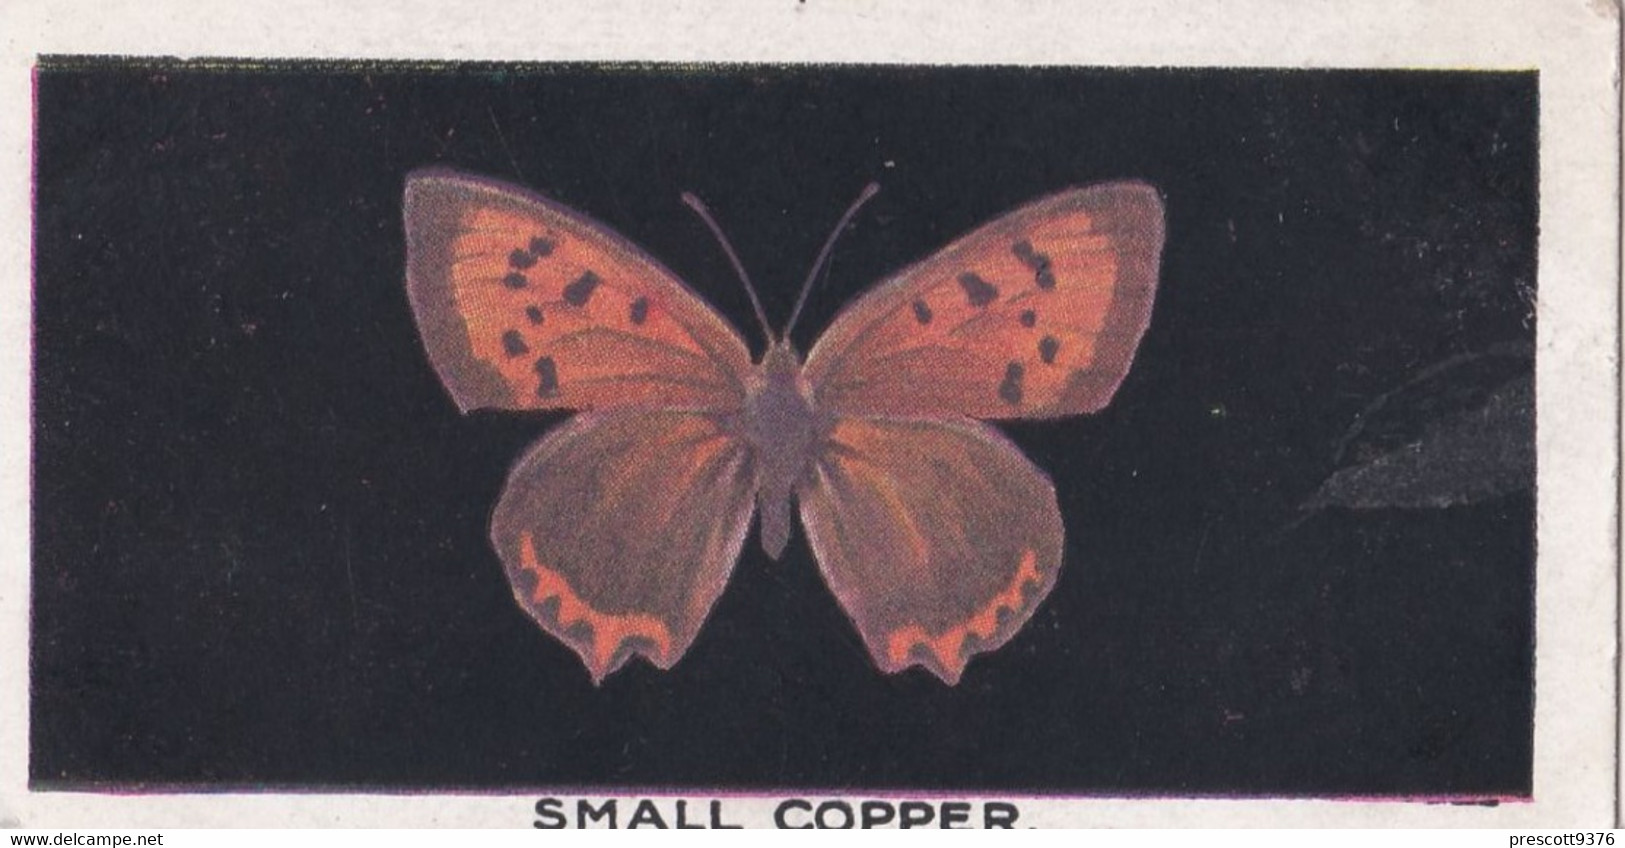 4 Small Copper - British Butterflies 1926 -  Phillips Cigarette Card - Original - Phillips / BDV